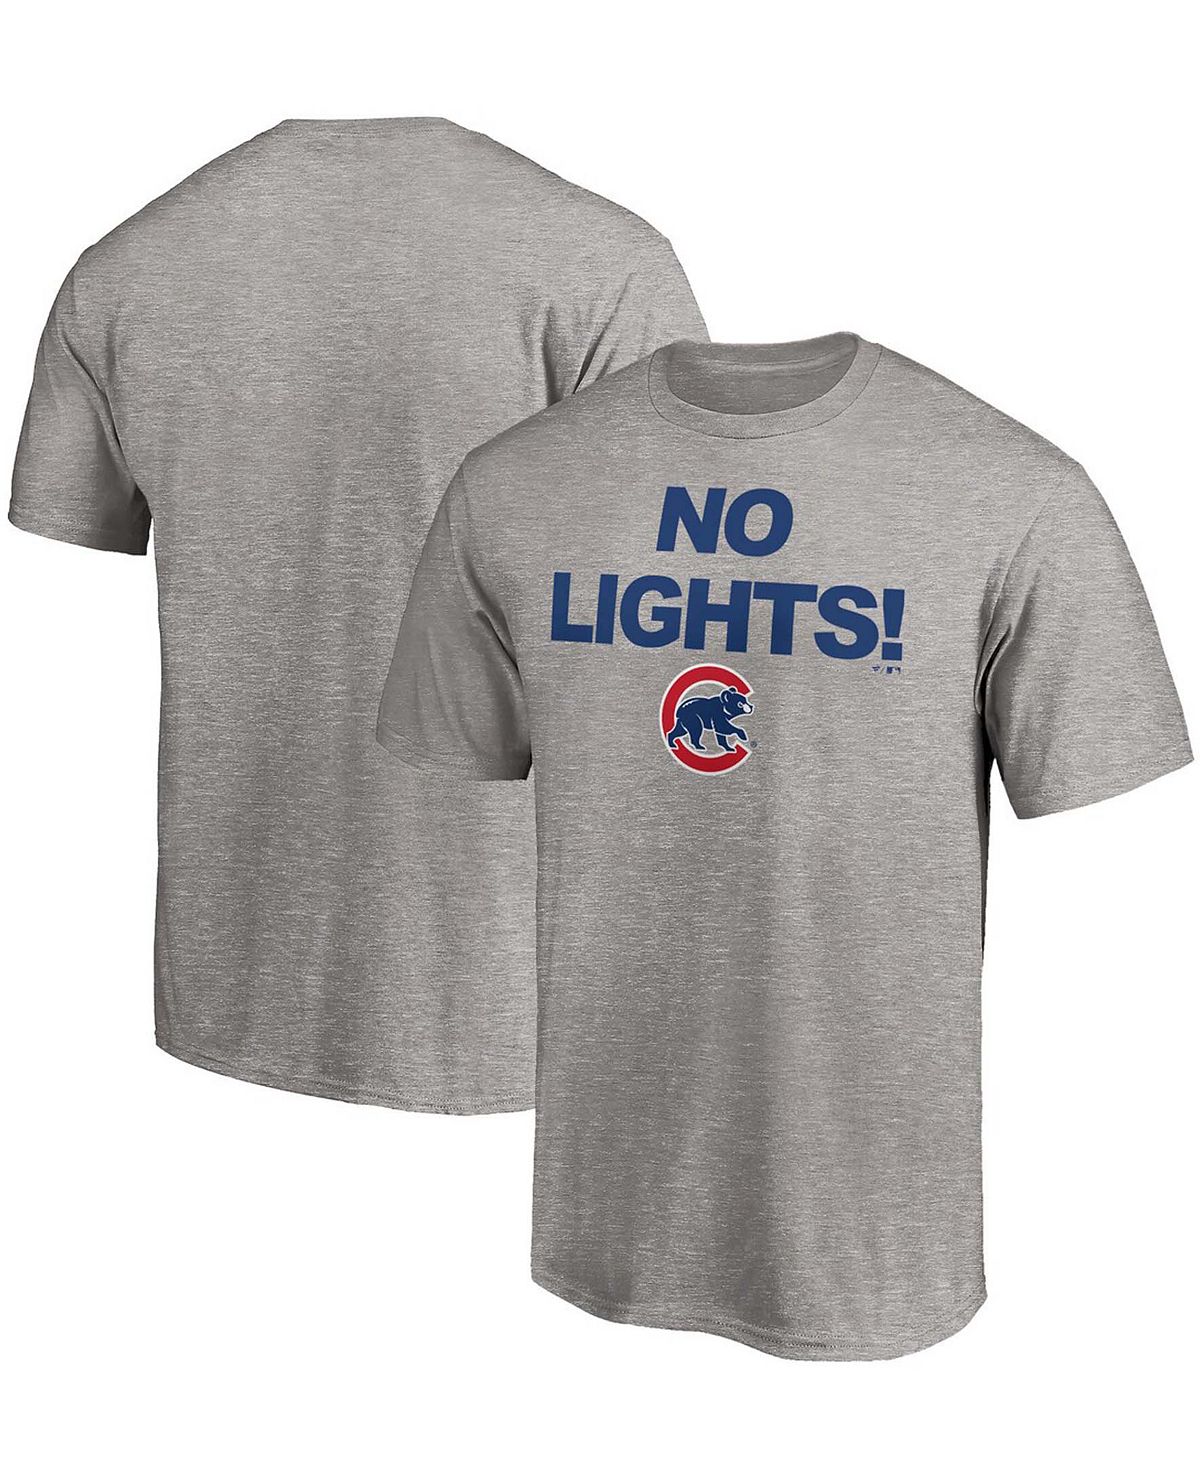 Мужская футболка chicago cubs hometown с меланжевым покрытием серого цвета Fanatics, мульти